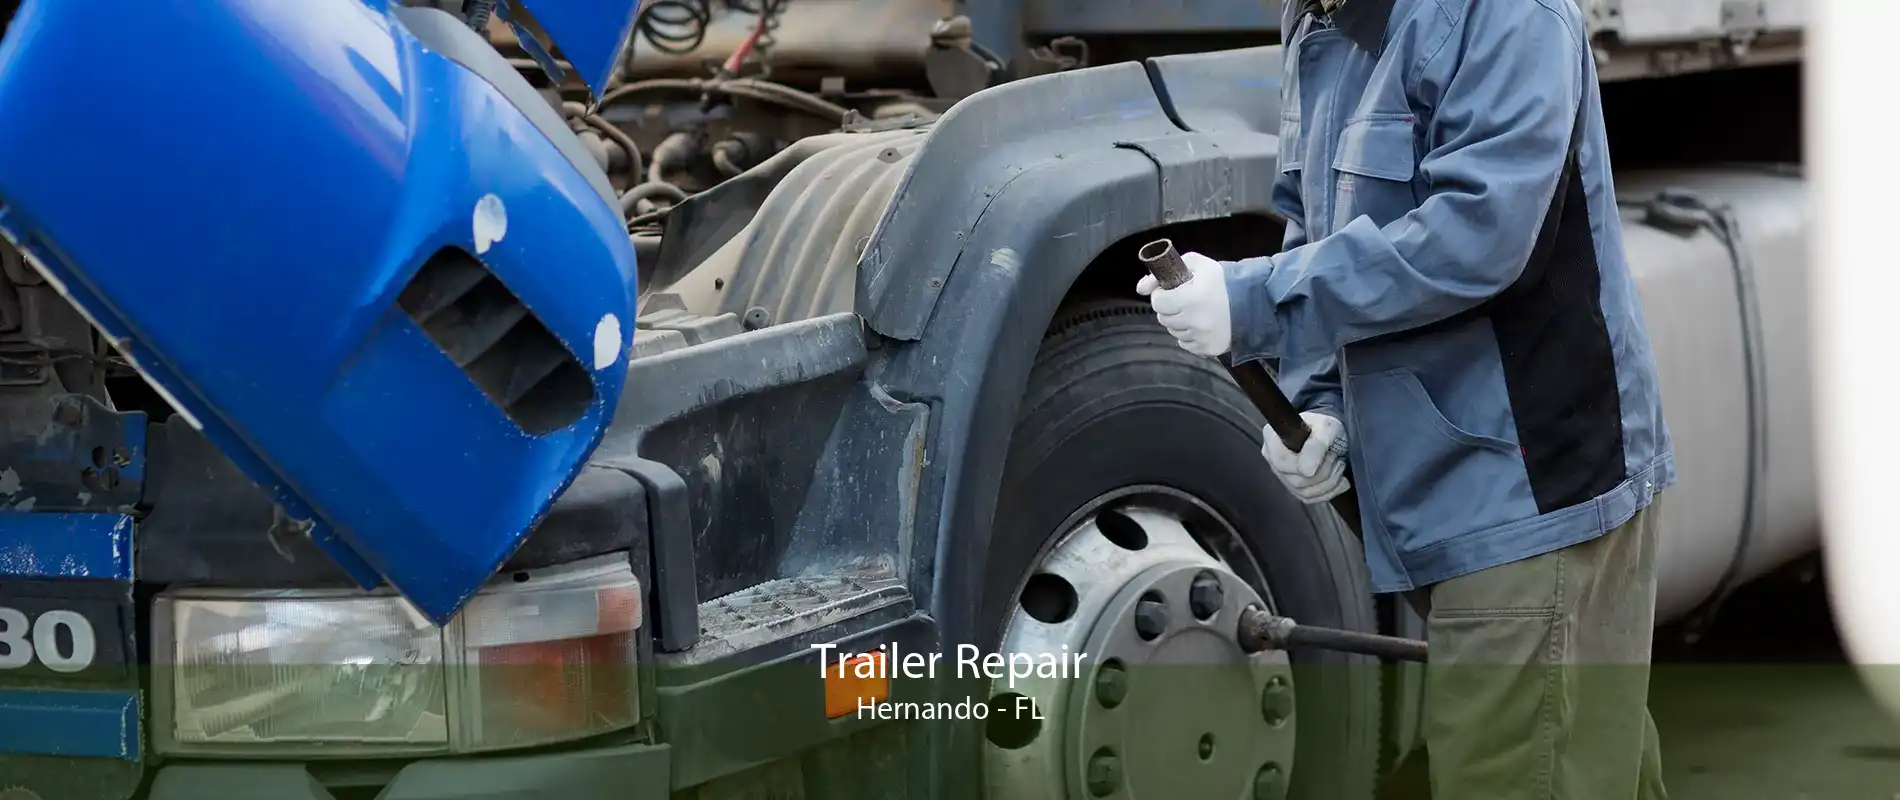 Trailer Repair Hernando - FL